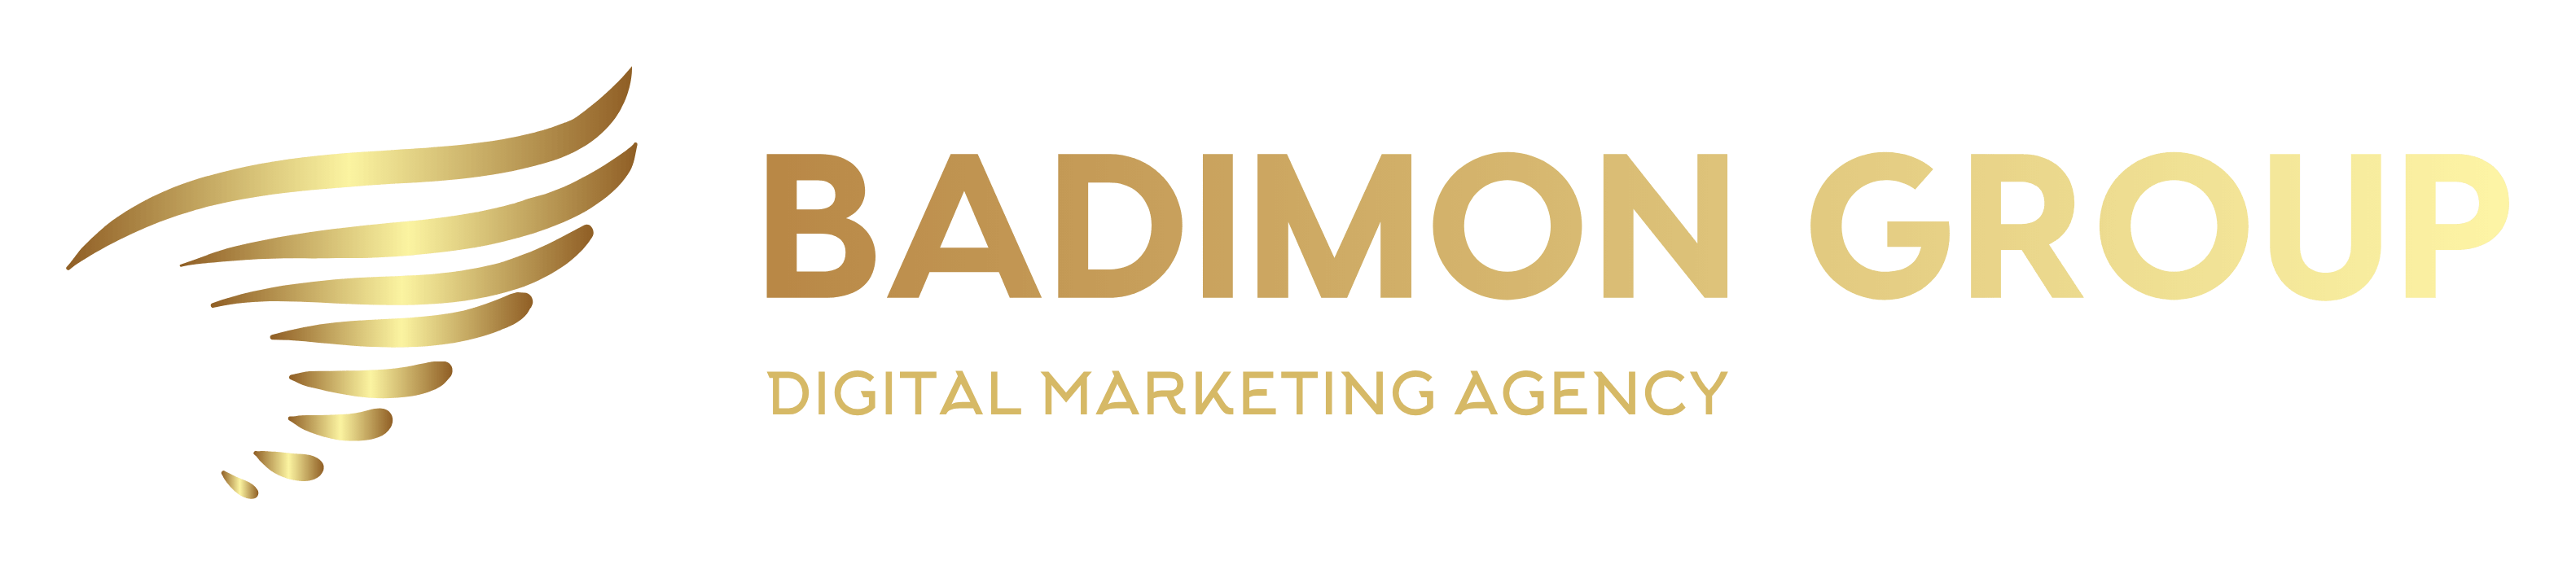 Badimon Group | Digital Marketing